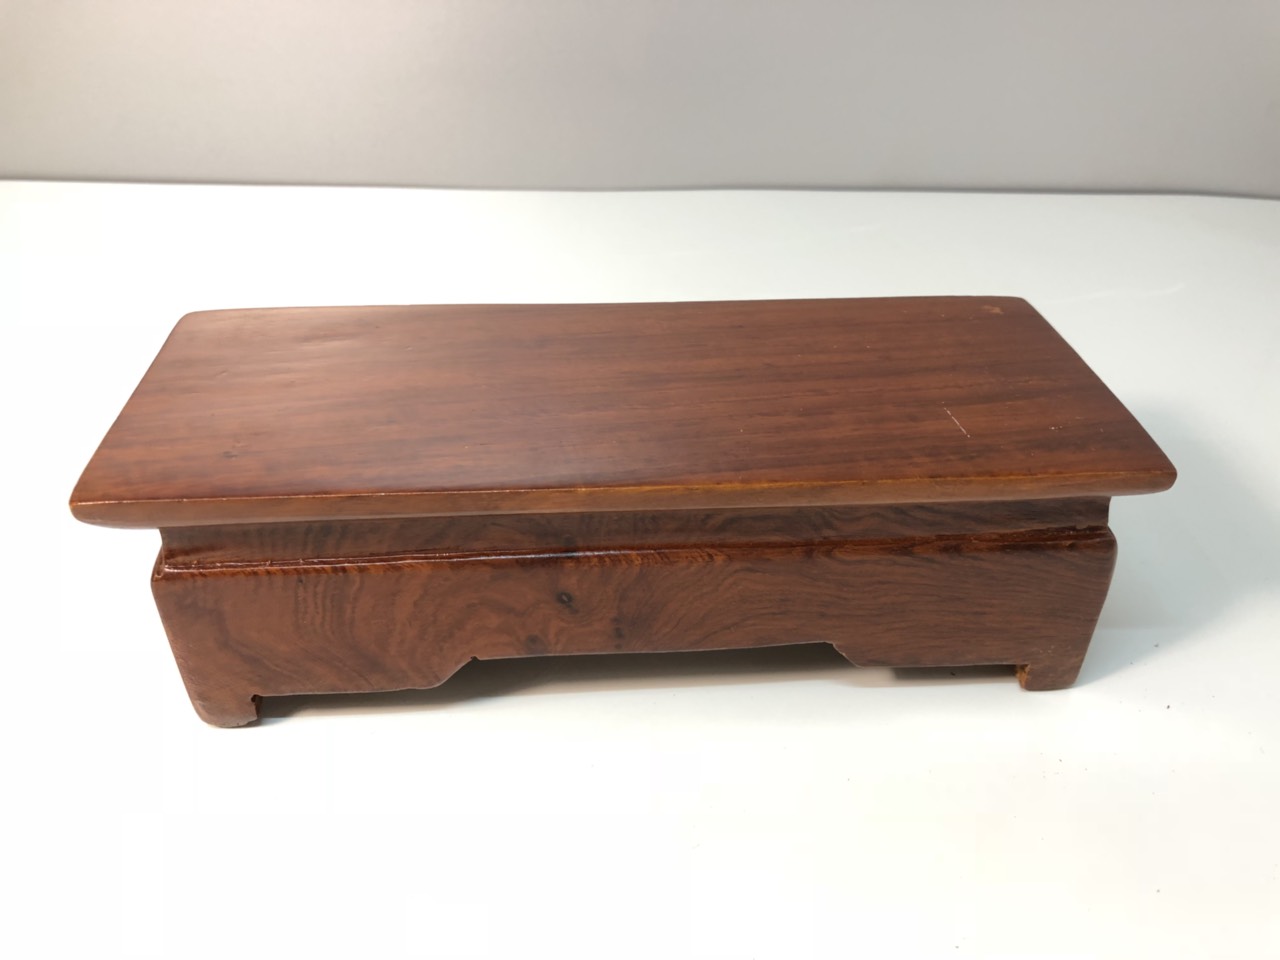 Đế gỗ hương - 8x20x6 cm